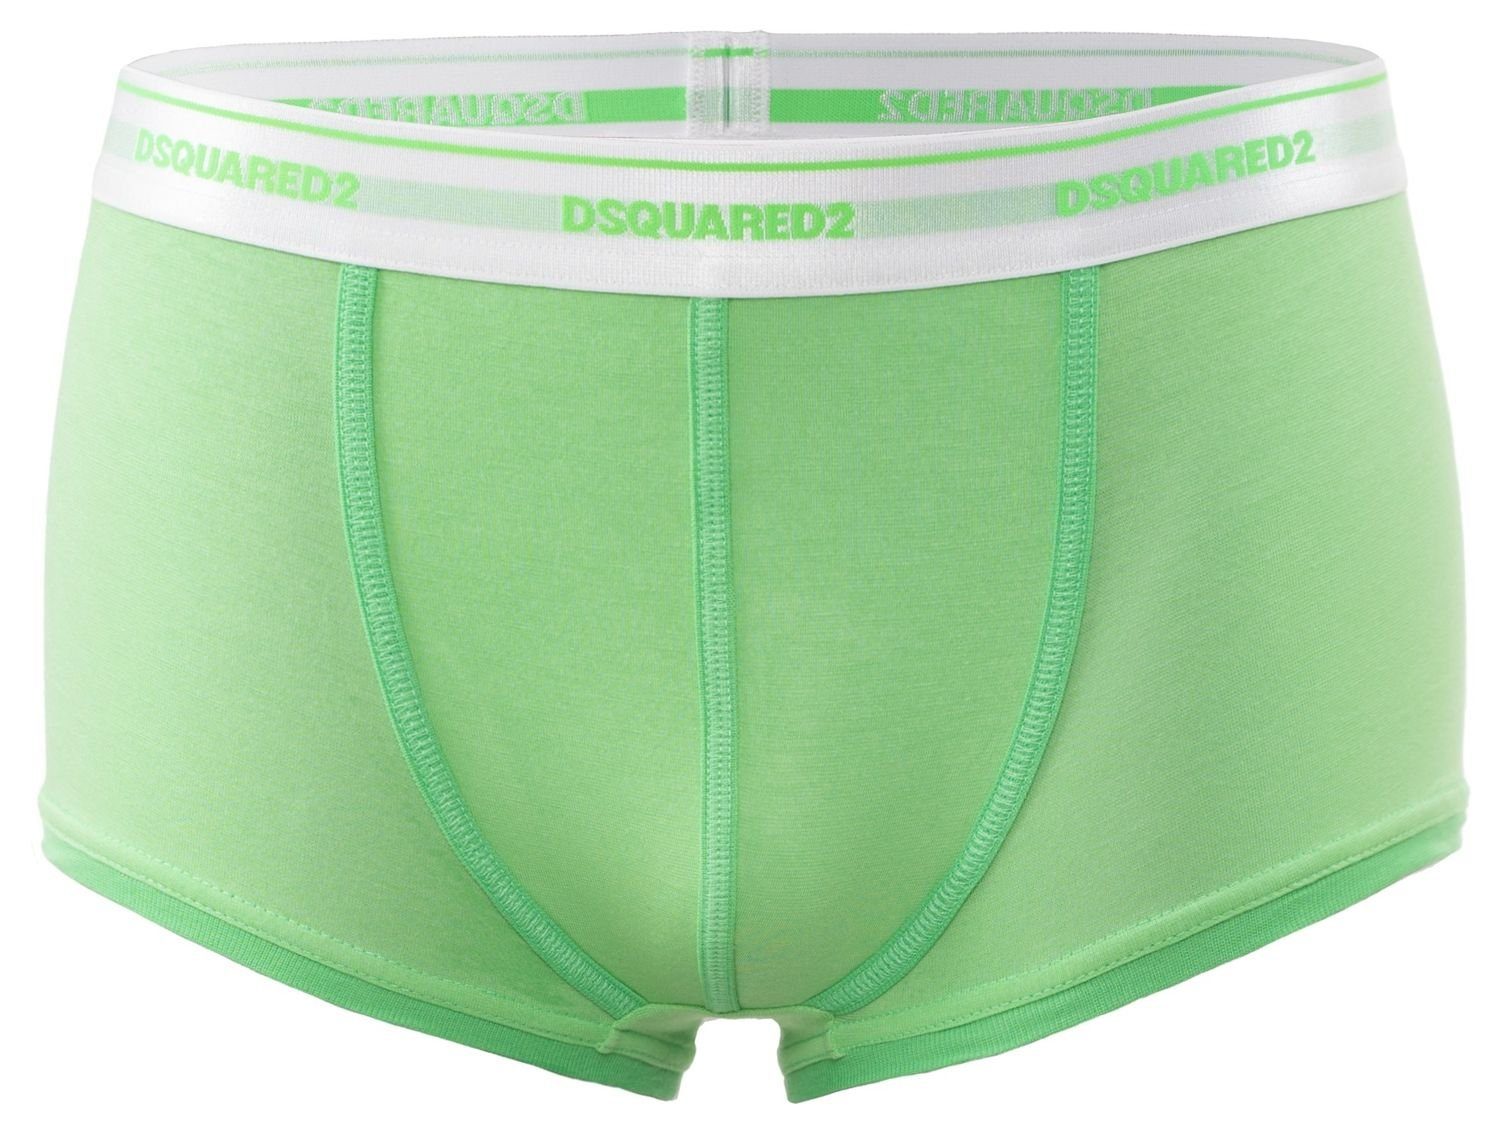 Dsquared2 Trunk »Dsquared2 Boxershorts / Pants / Shorts / Boxer in grün  Größe S / M / L / XL / XXL« (1 St) online kaufen | OTTO